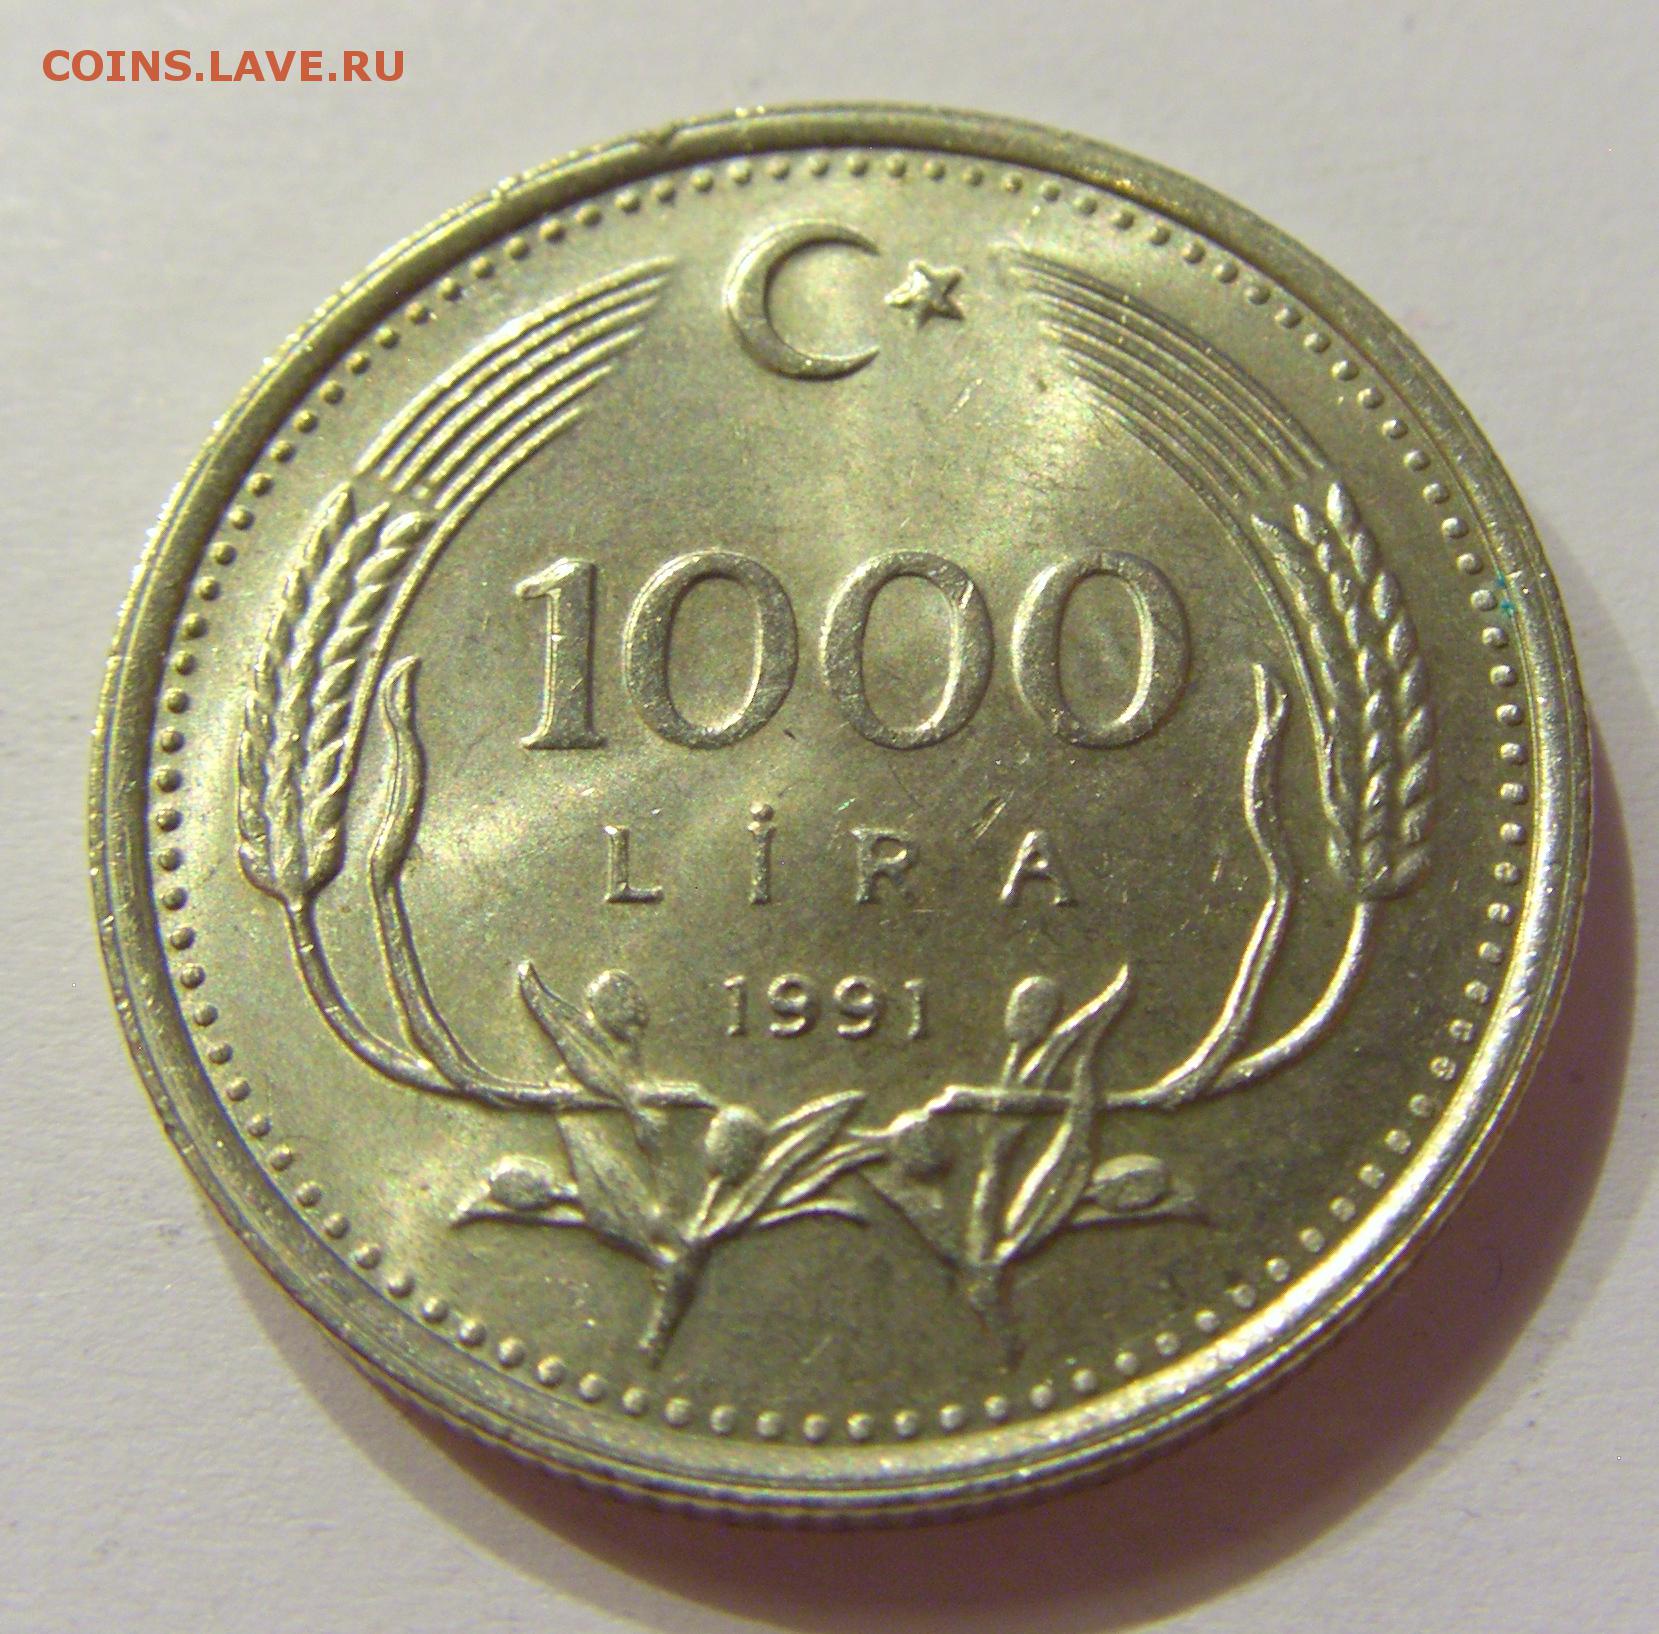 7000 лир в рублях. 1000 Лир Турция в рублях. 1000 Лир монета. 1000 Рублей в турецких лирах. 1000 Копеек.